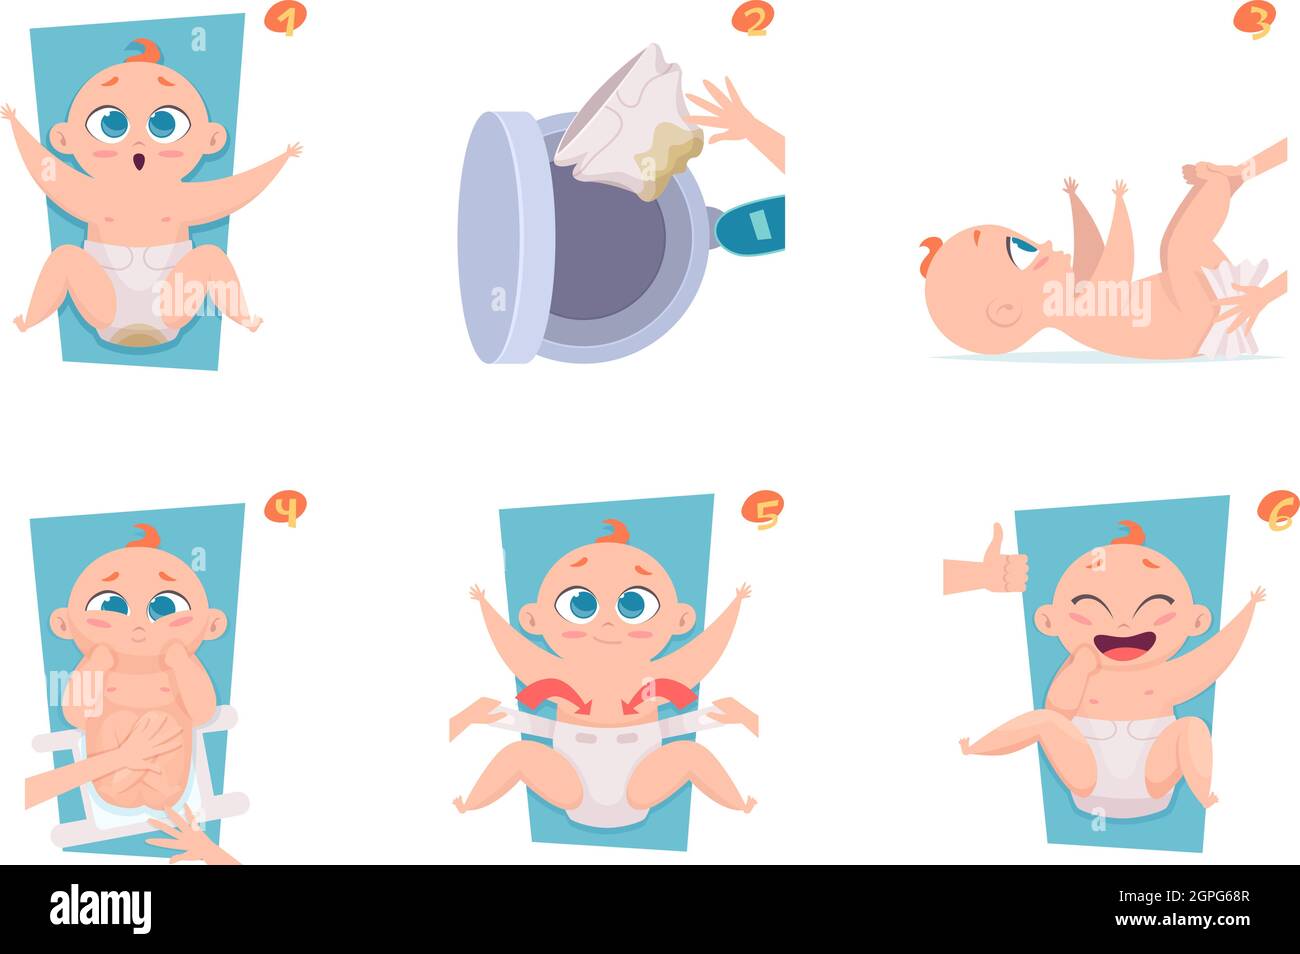 Schritte zum Wechseln der Windeln. Healthcare Medical ankündigen Bilder an Eltern Baby Pflege Vektor Illustration Stock Vektor